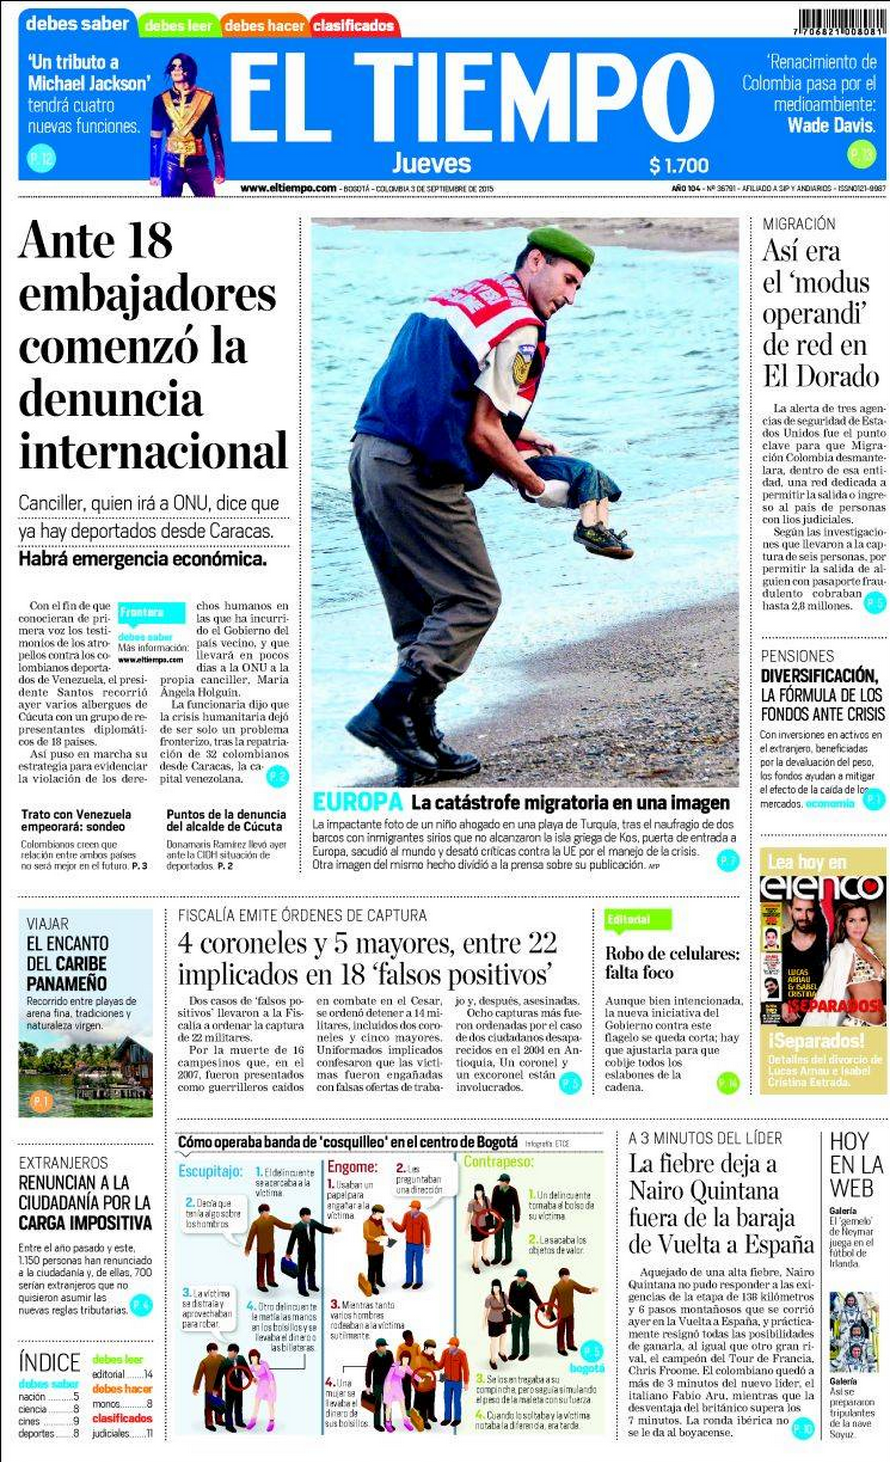 Drowned Migrant Boy El Tiempo Front Page